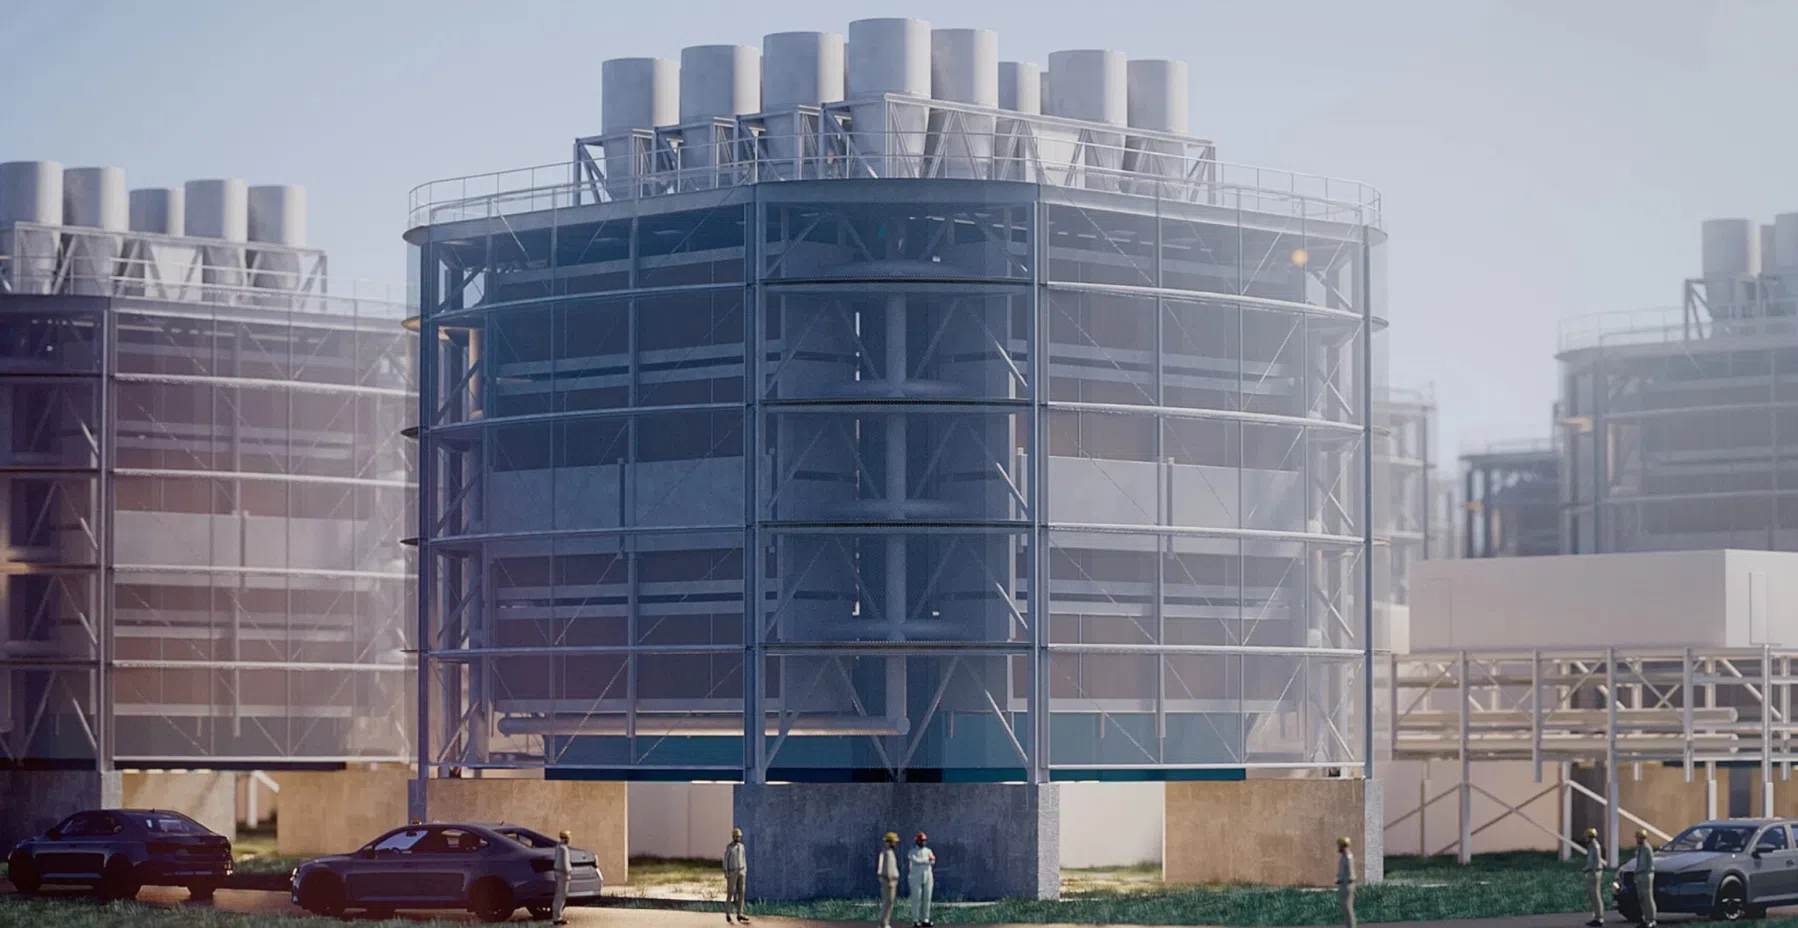 Doorbraak in fabriek die CO2 opzuigt maakt techniek commercieel haalbaar